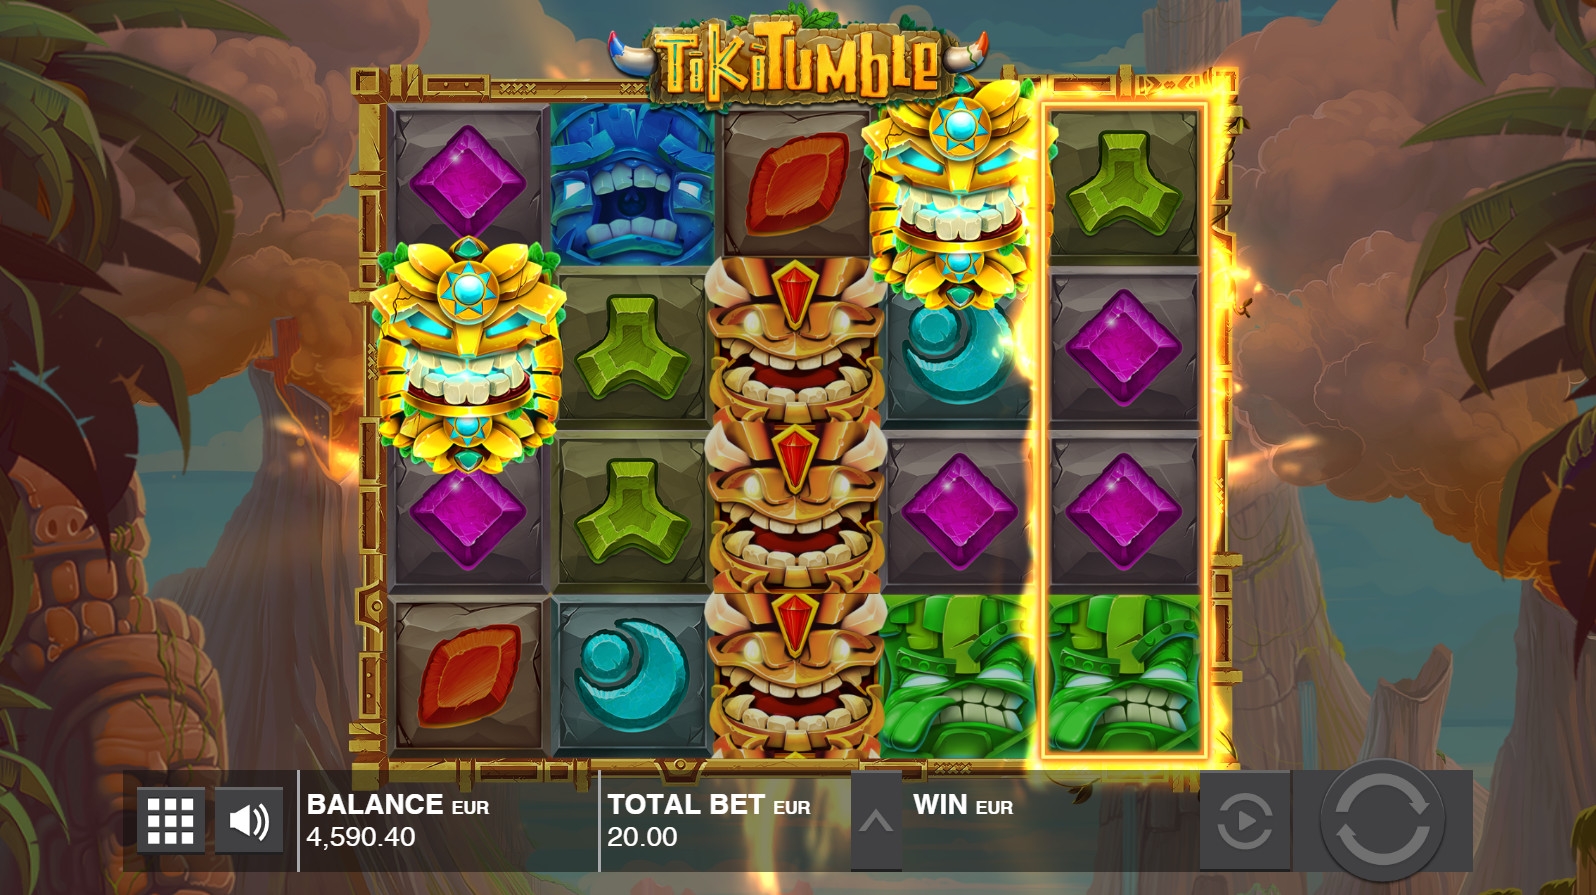 Tiki Tumble (Tiki Tumble) from category Slots